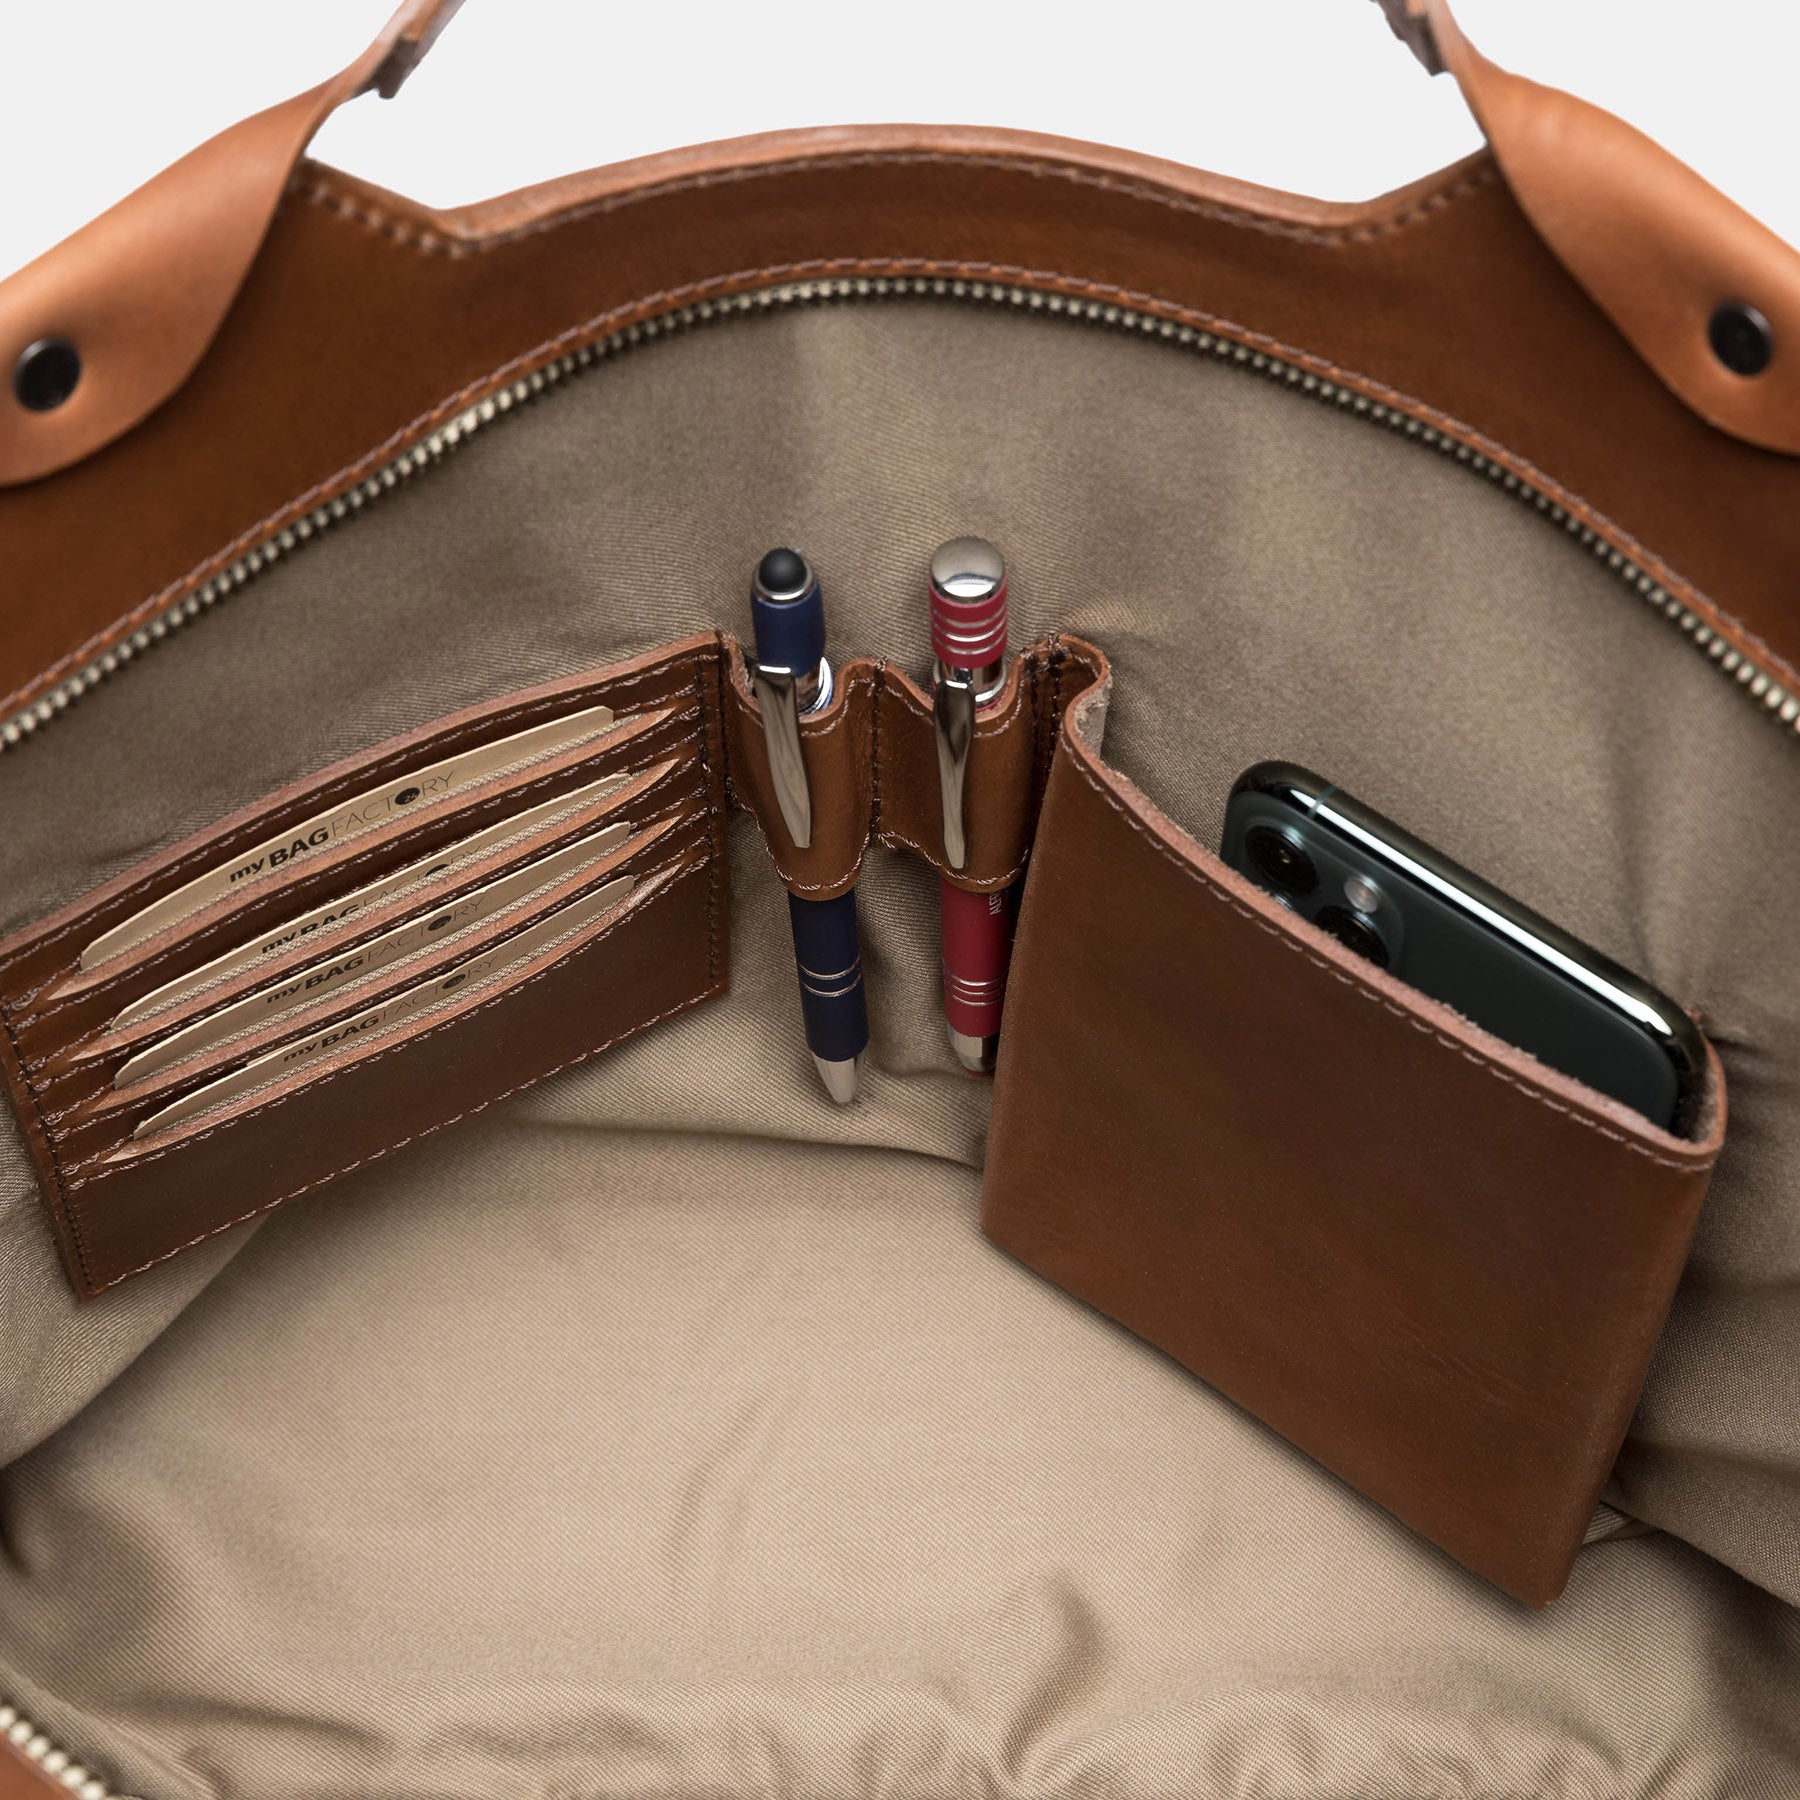 Handbag DEBBY smooth leather brown